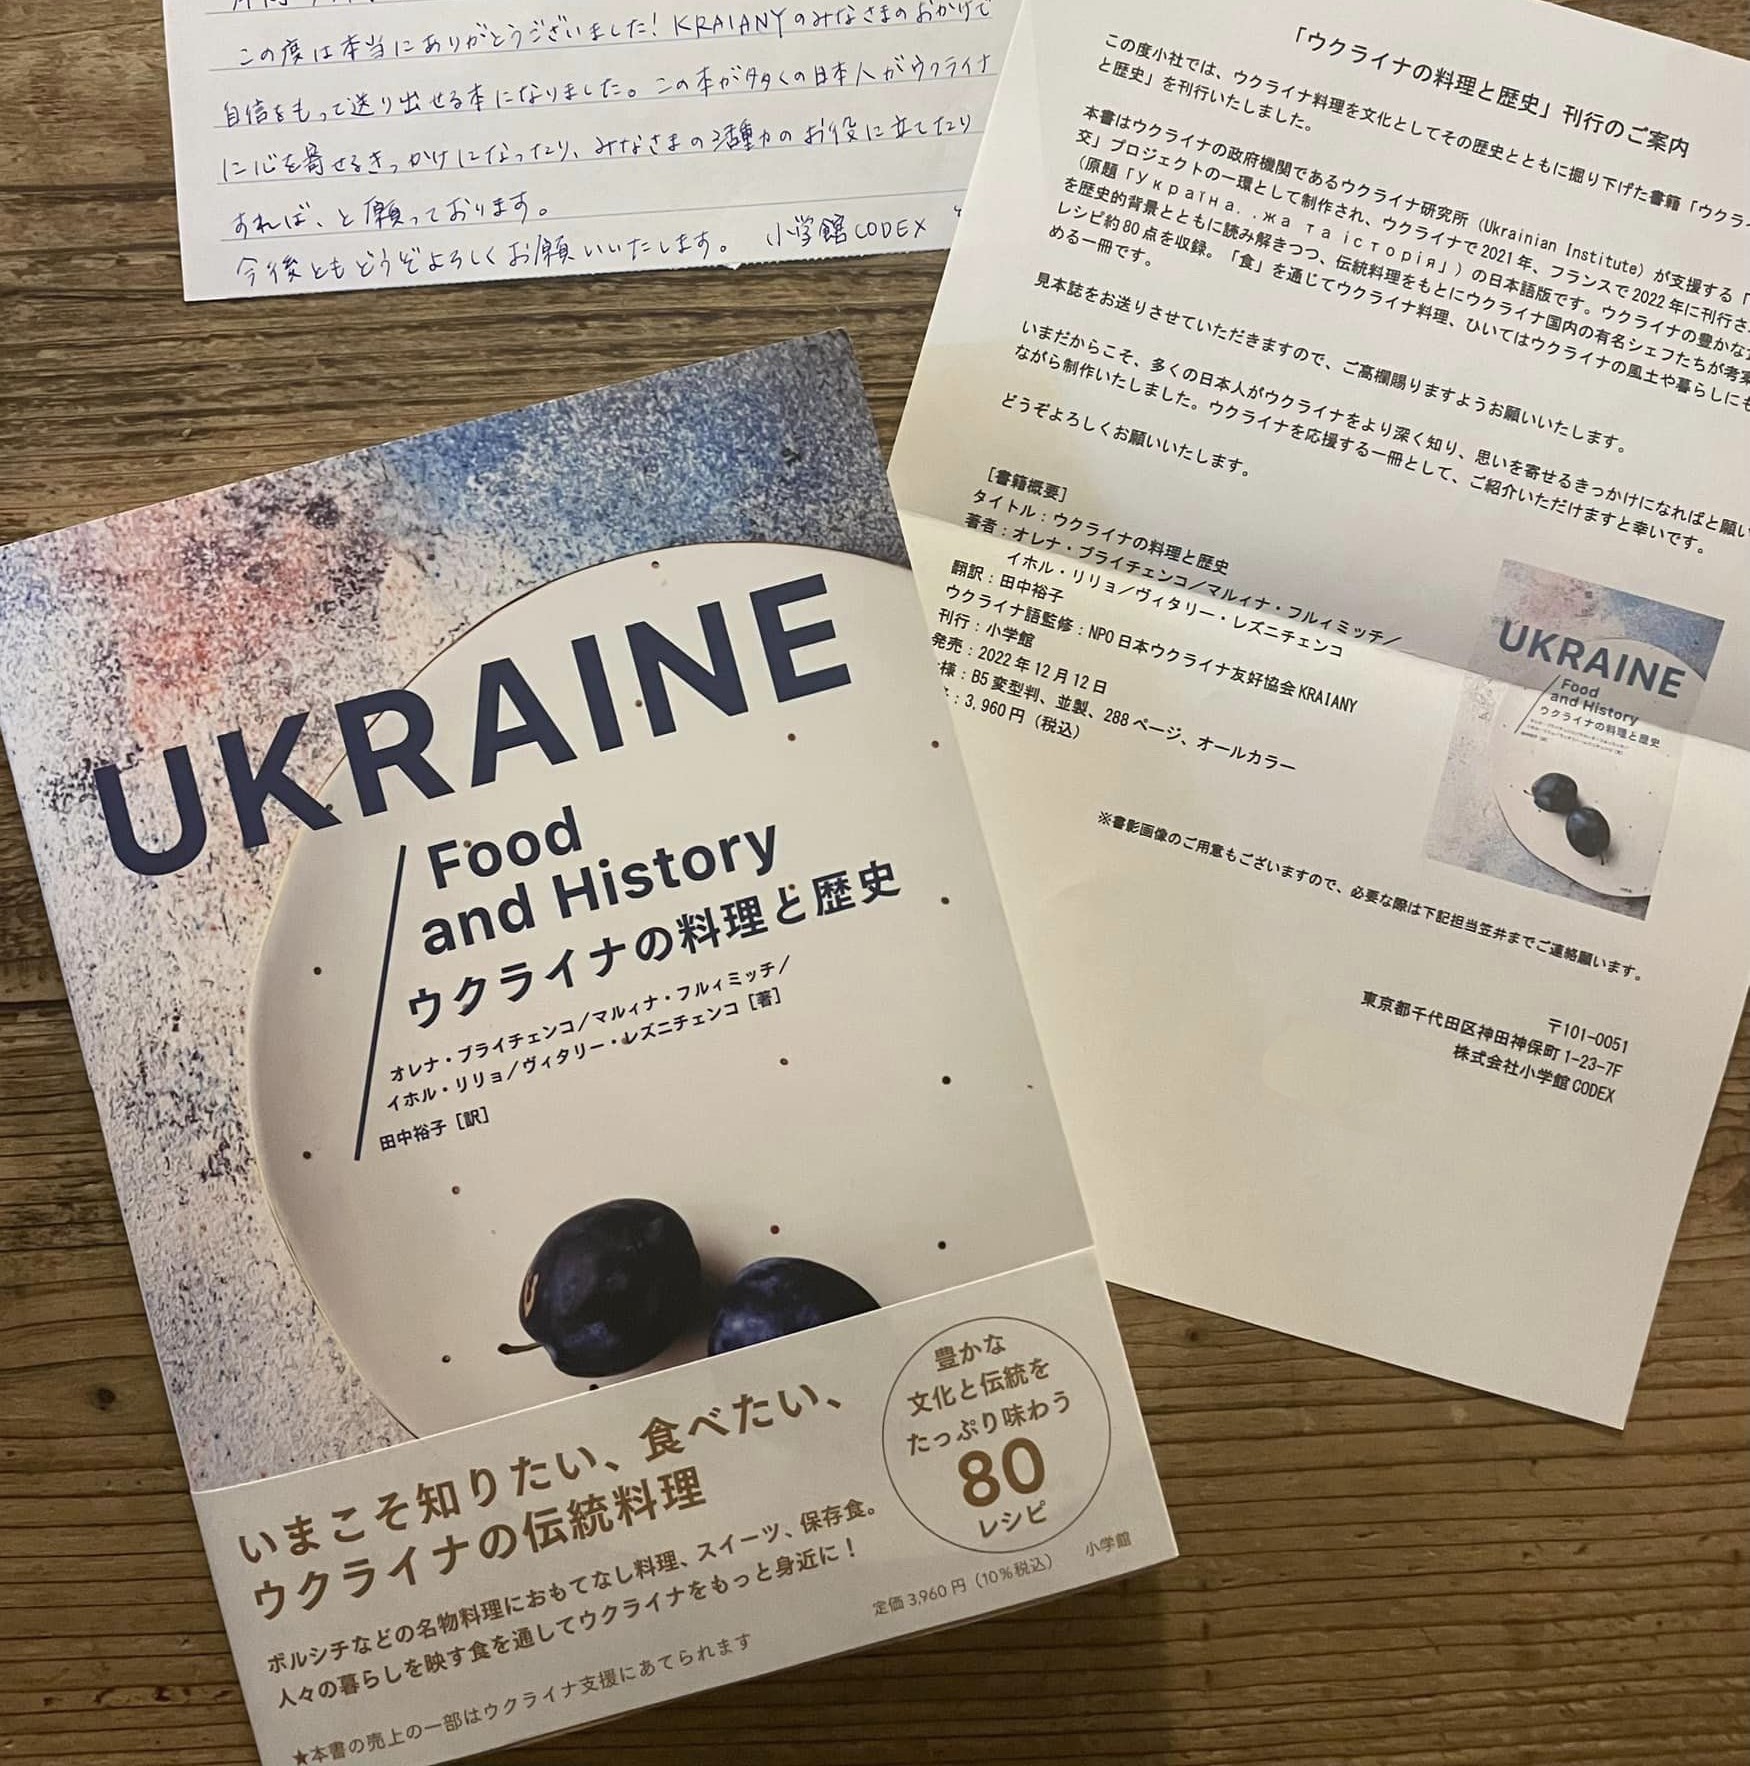 「ウクライナ料理歴史」の日本語訳が出版されました - お知らせ - クラヤヌィ (Kraiany)